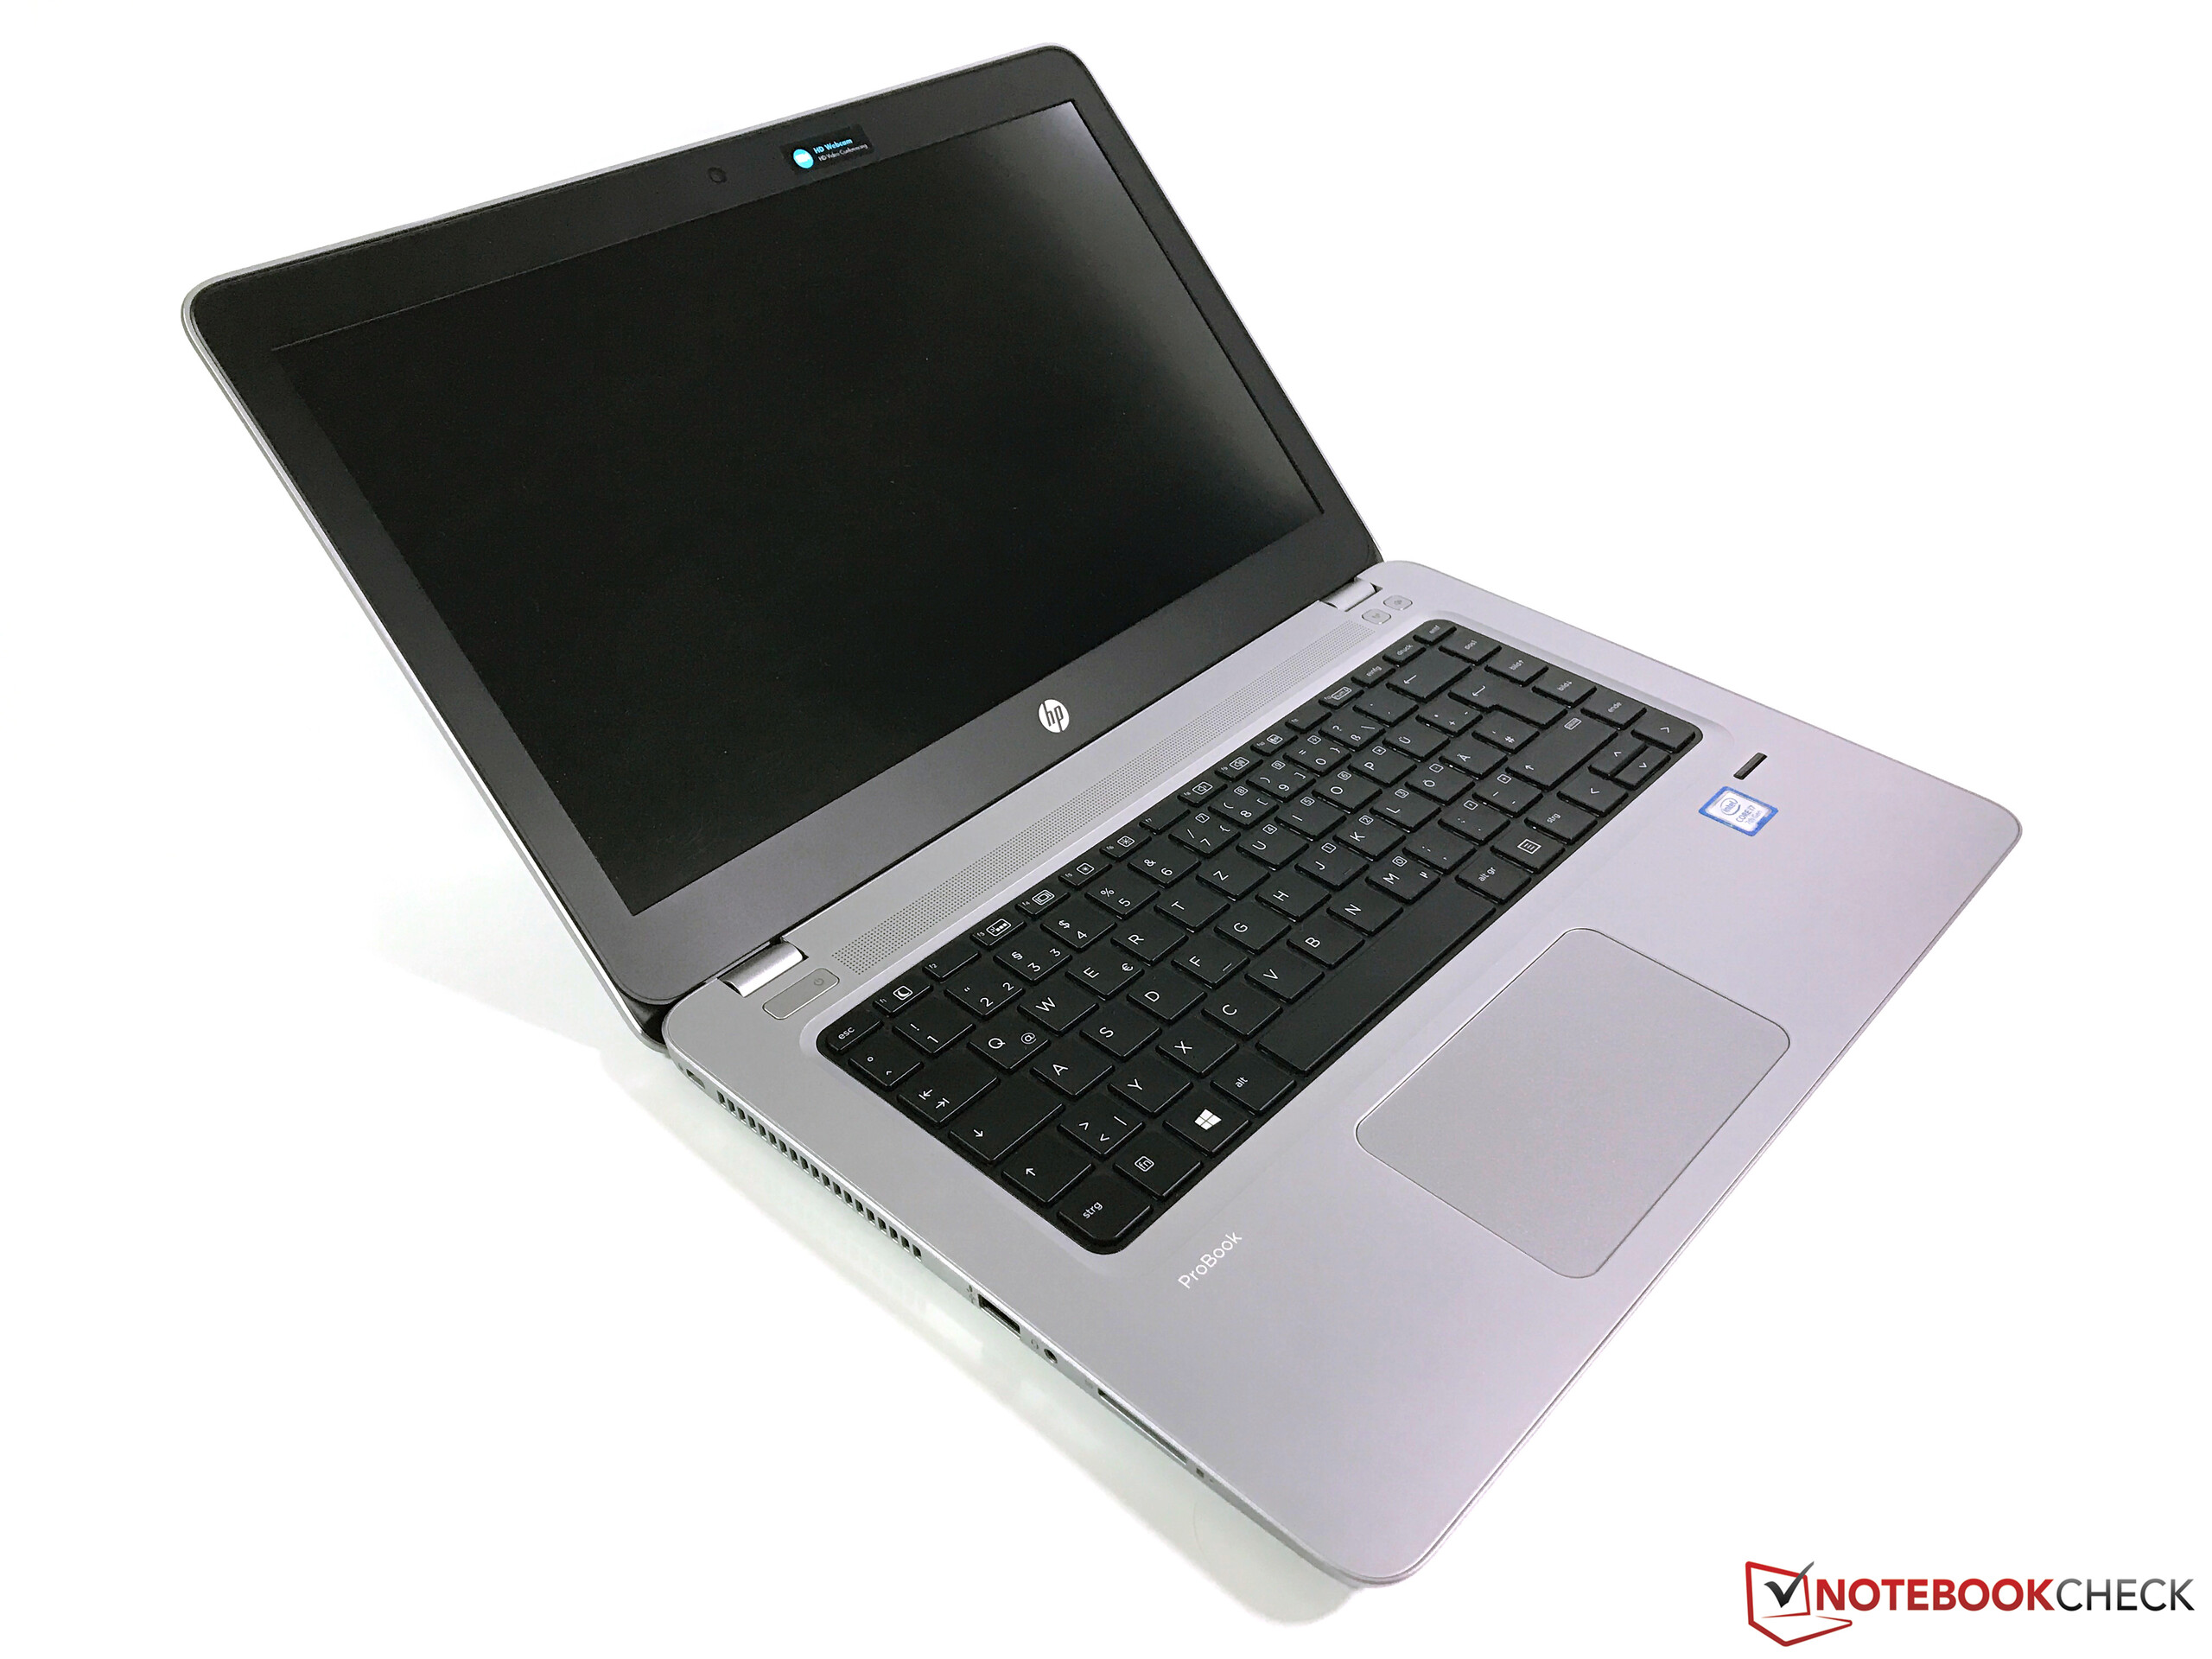 ProBook 450 G4 Notebook PC